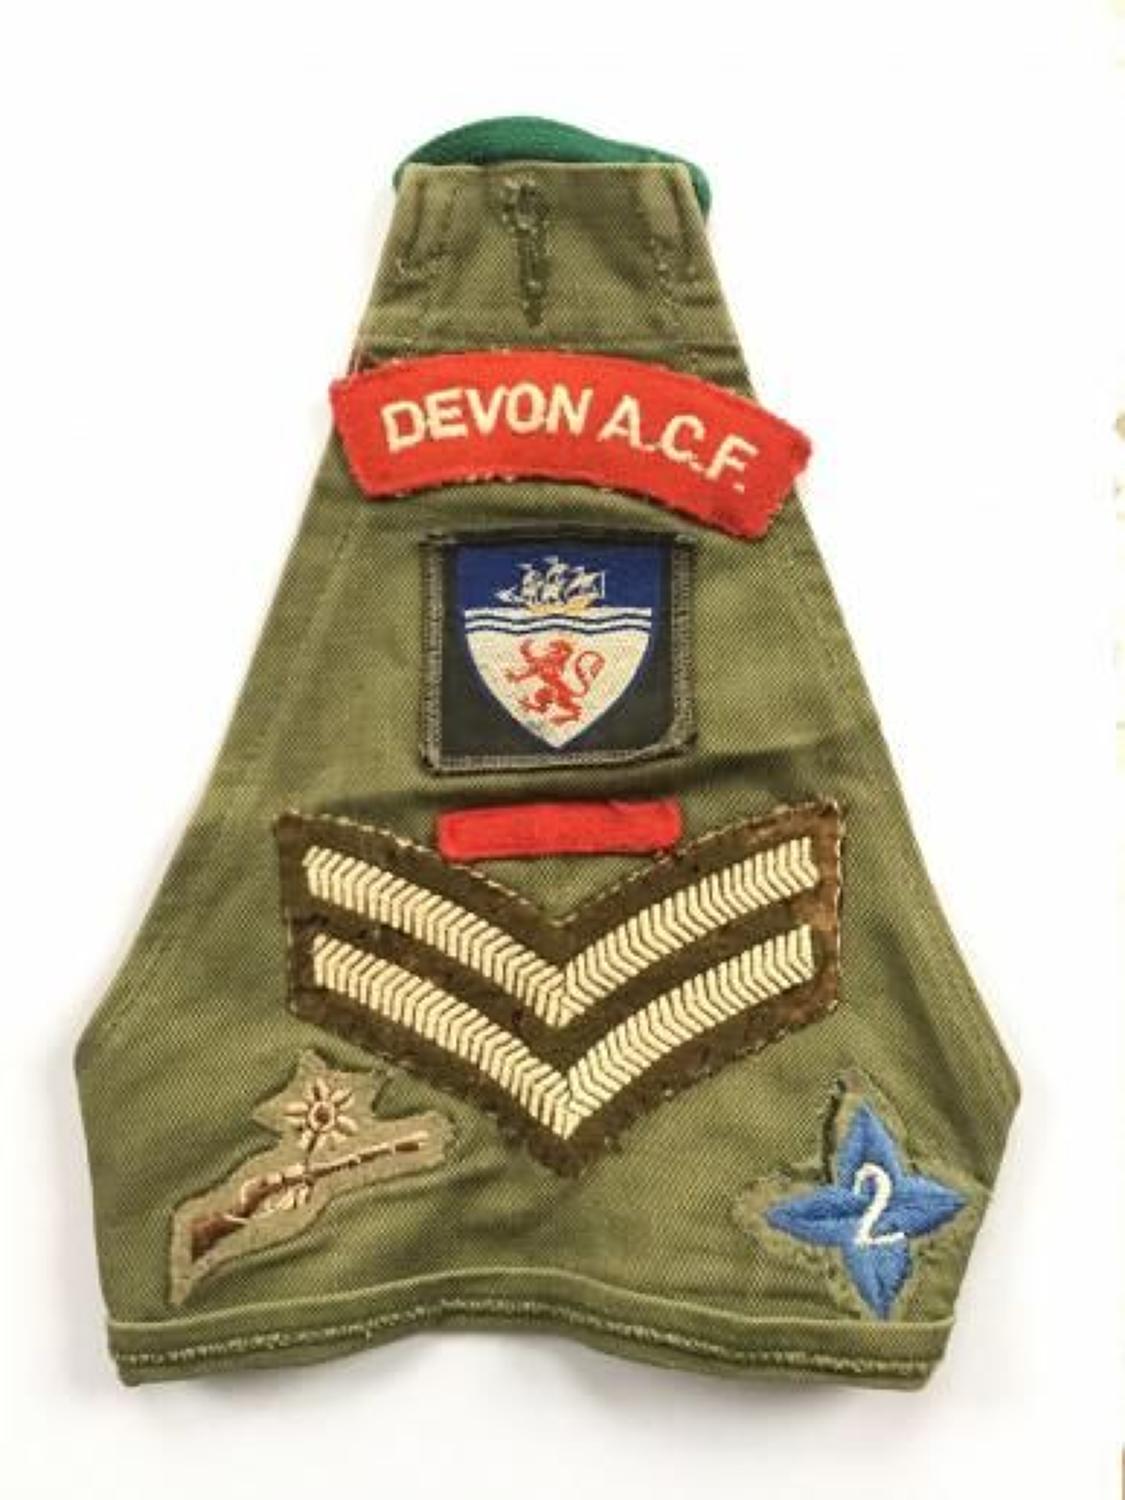 Devon Army Cadet Brassard Badges.